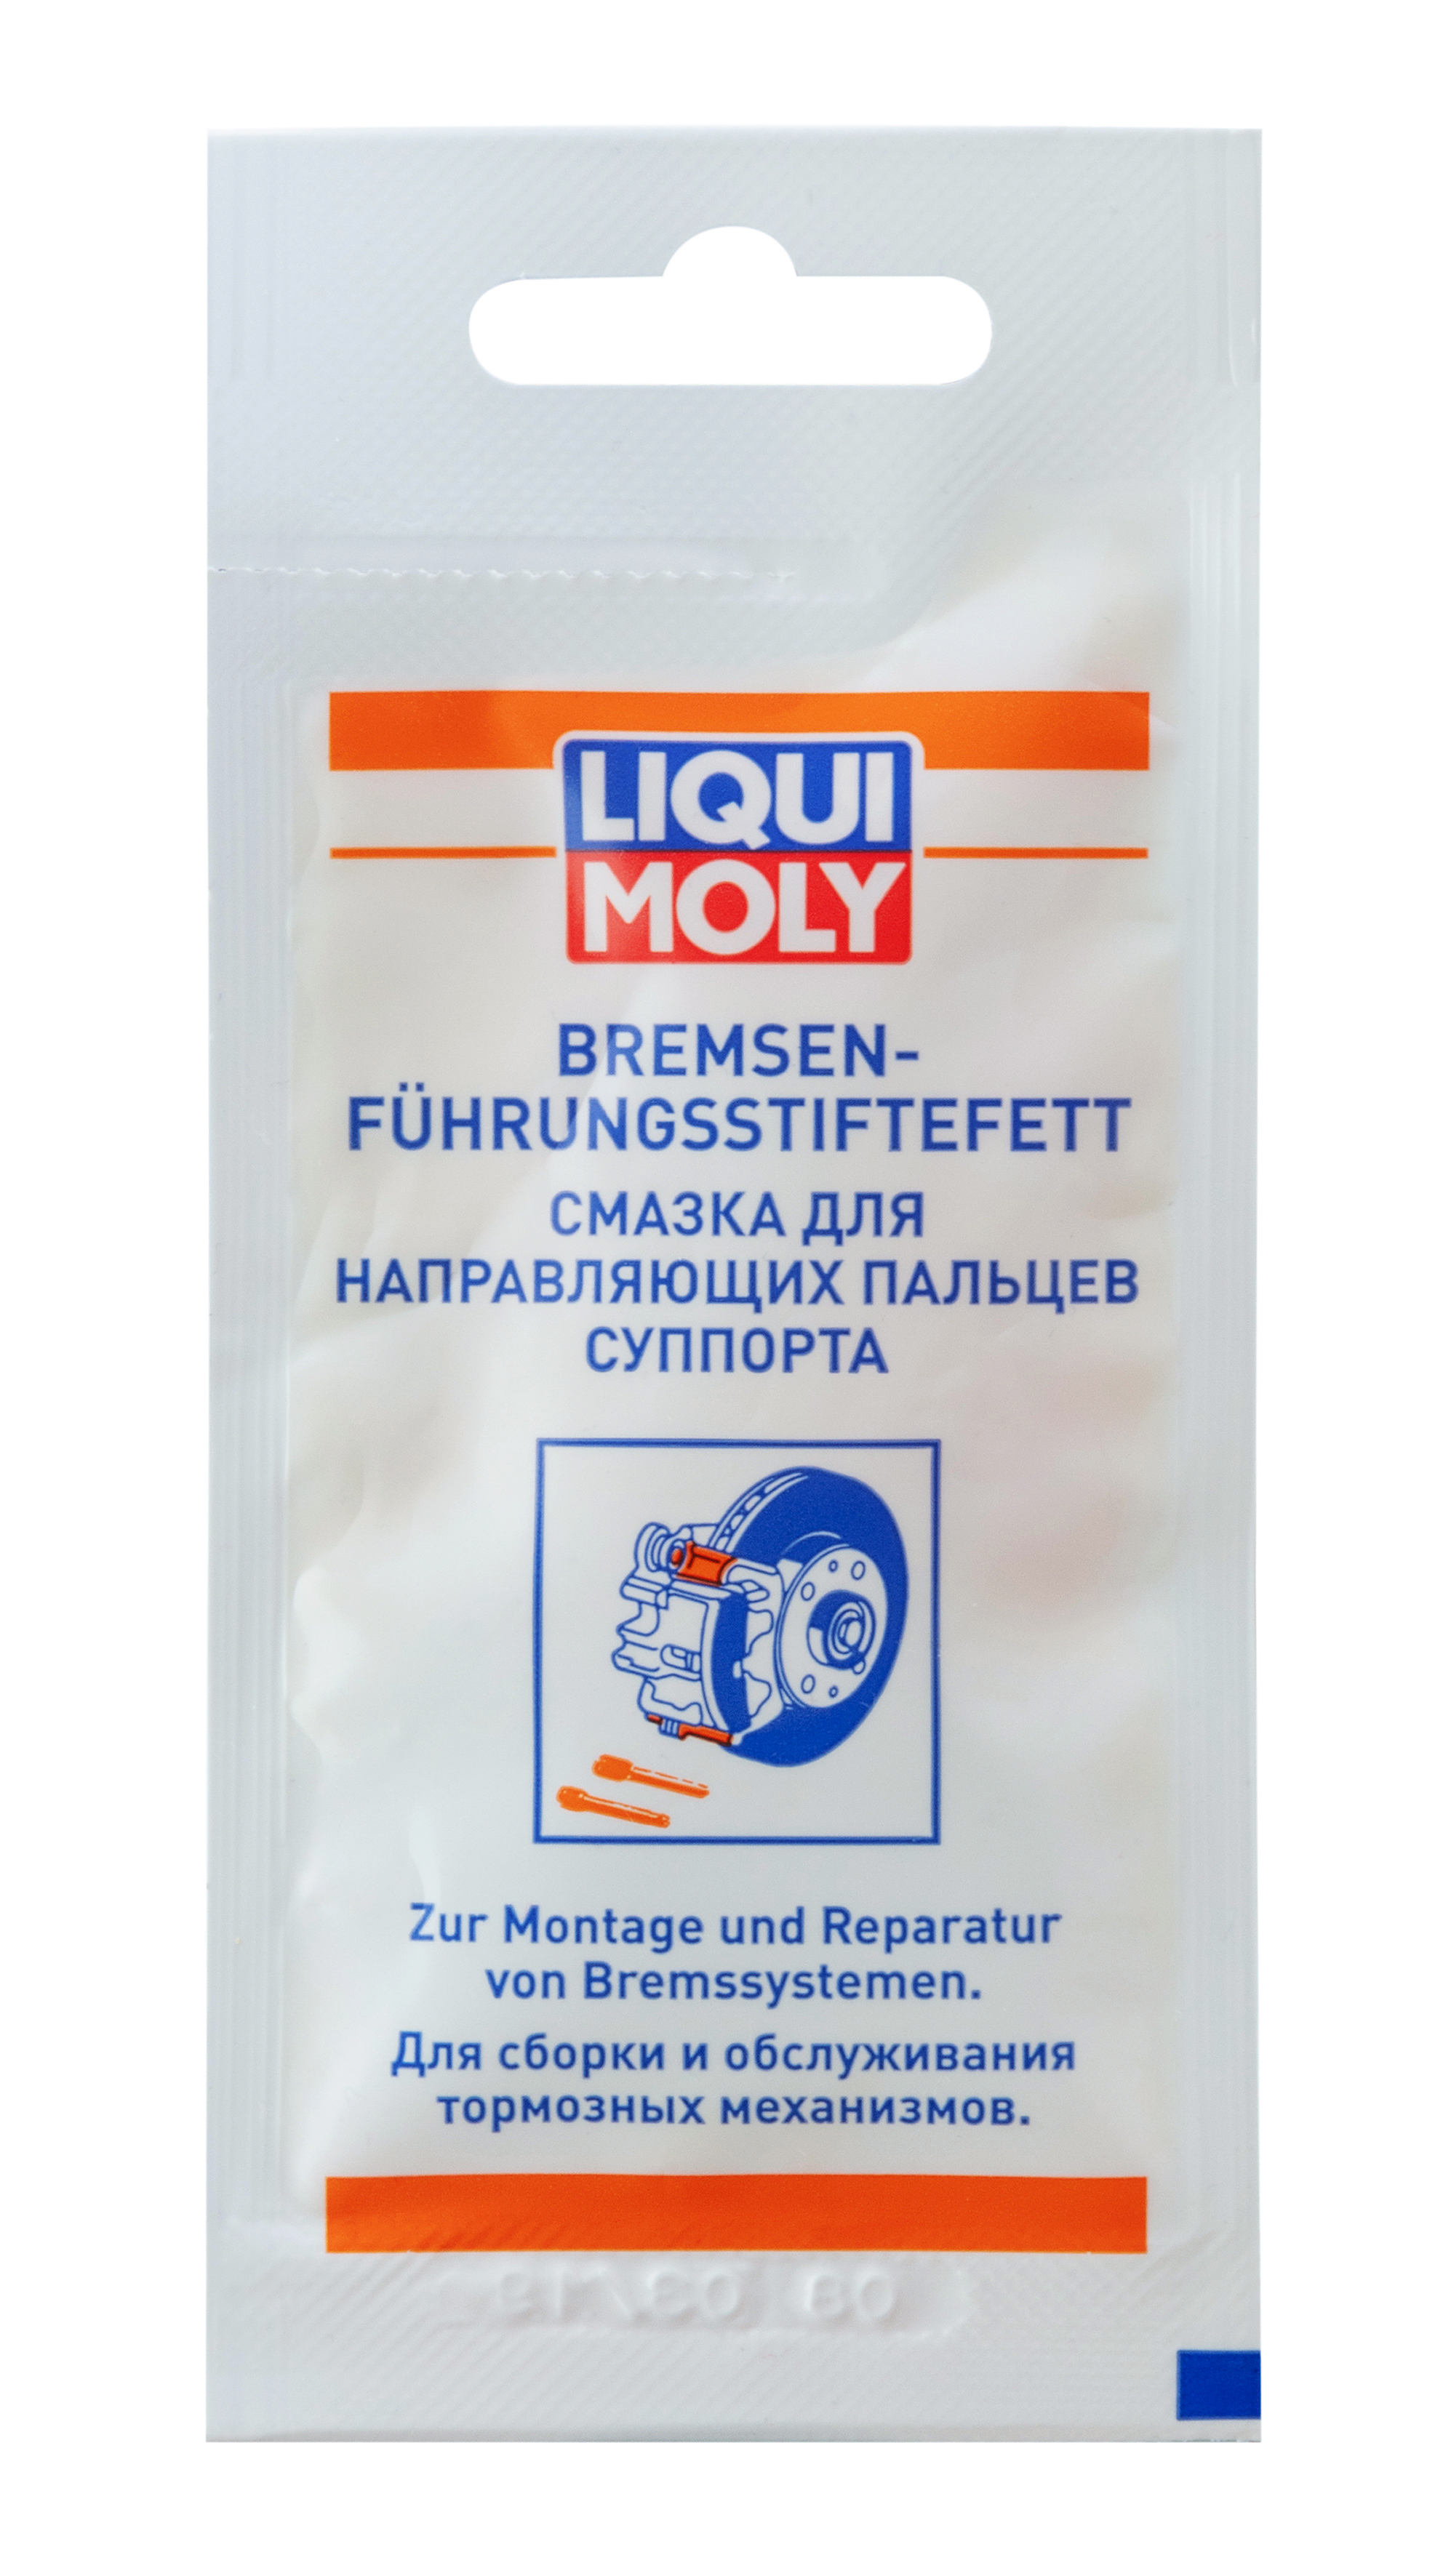 Смазка для направляющих пальцев суппорта Bremsenfuhrungsstiftefett, 5мл - Liqui Moly 39022